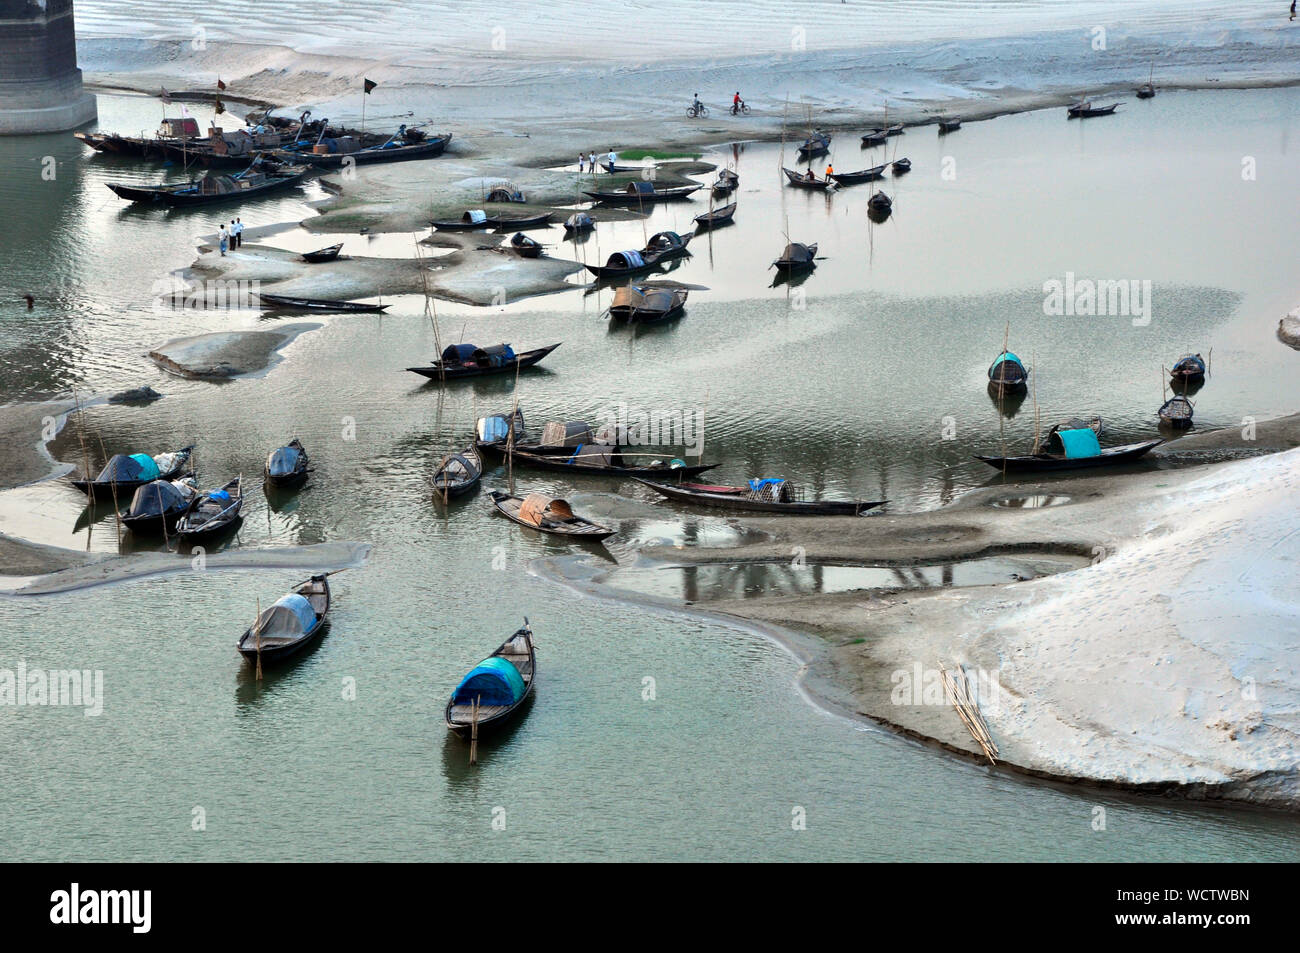 Fischerboote liegen auf Flachwasser der Trocknung Padma River. Der Fluss ist die Trocknung durch Entzug des Ganges Wasser bei farakka Barrage in Westbengalen. Die ökologische Katastrophe hat die Fischerei der Gemeinschaft beeinträchtigt und Sie kämpfen, um ein Leben zu bilden. Pakshi, Pabna, Bangladesch. März 21, 2011. Stockfoto